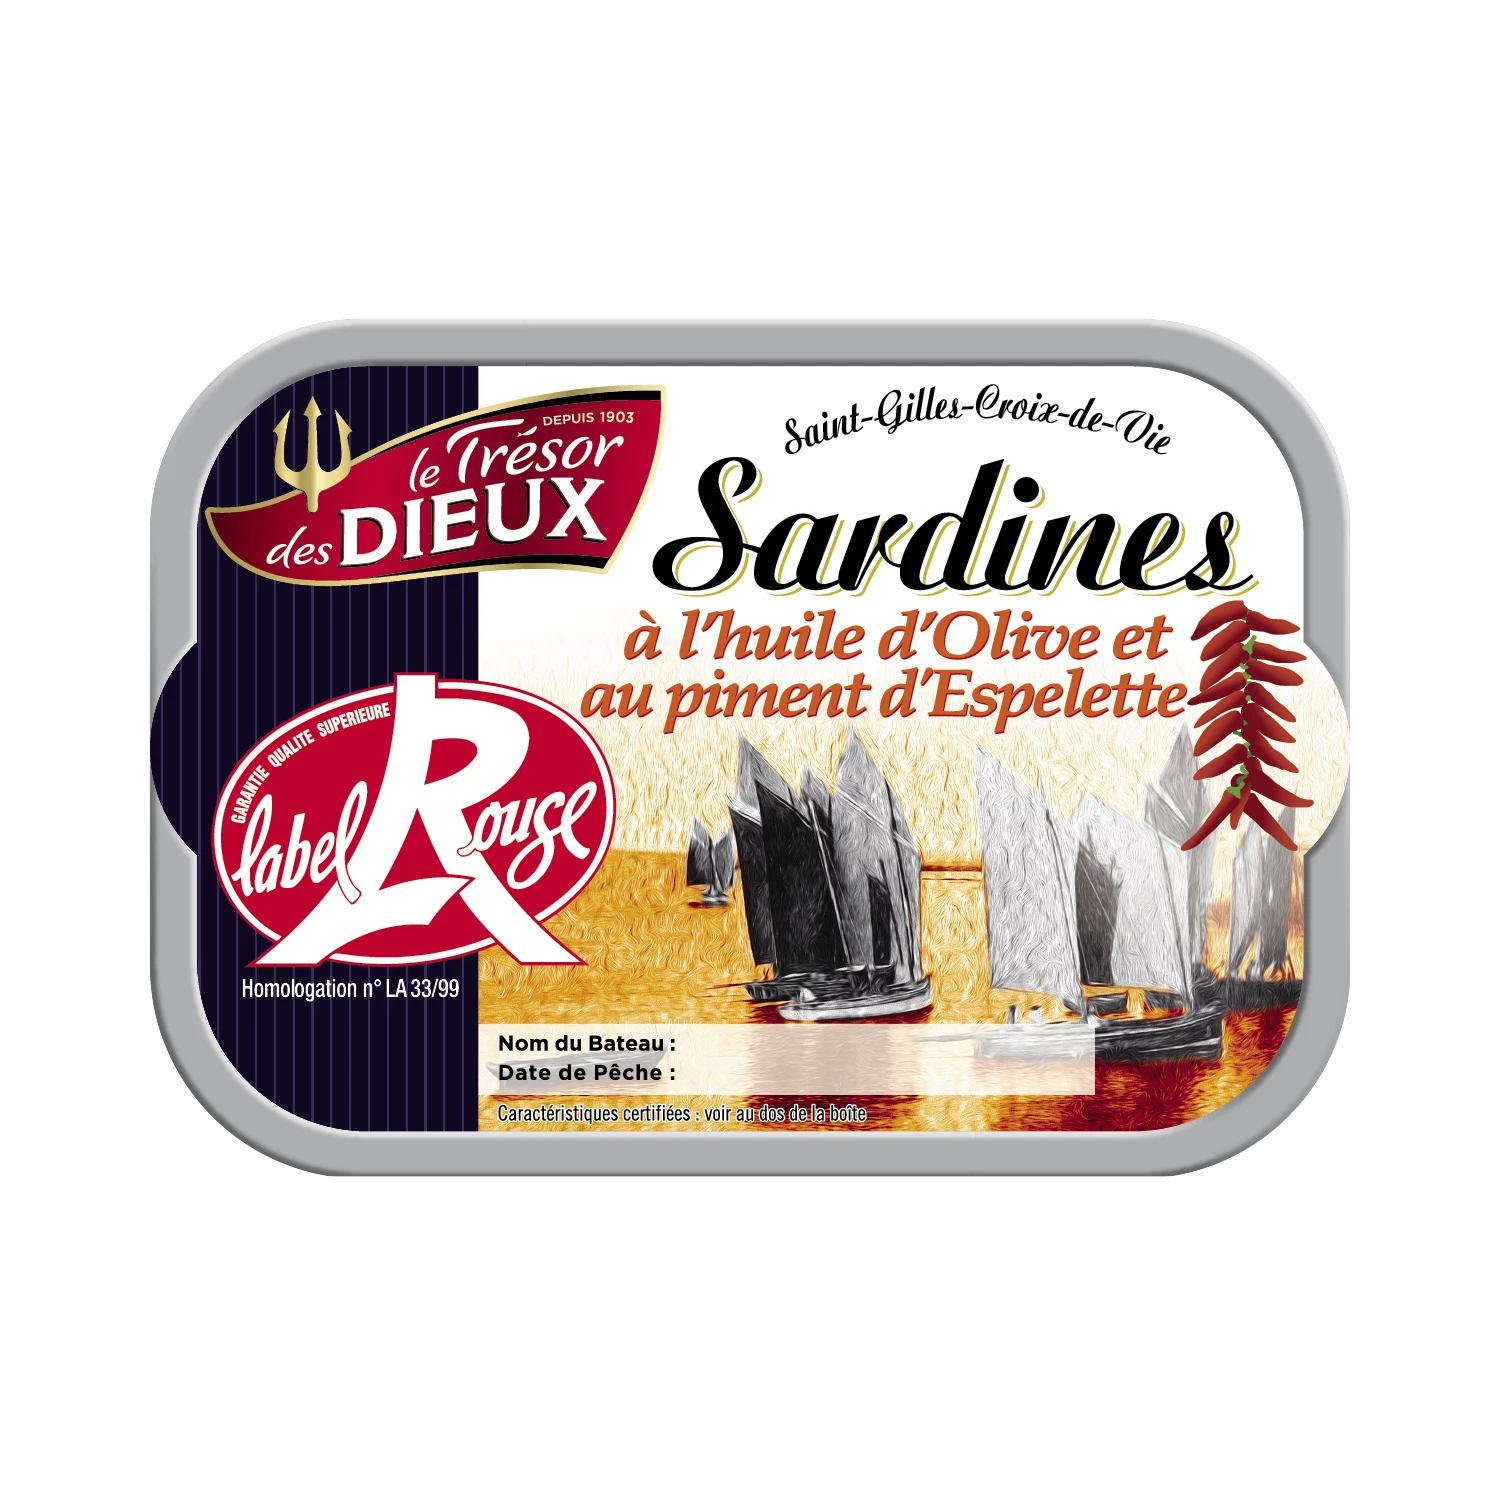 Sardines à l'Huile et Piment d'Espe lette, 115g -  LE TRÉSOR deS DIEUX